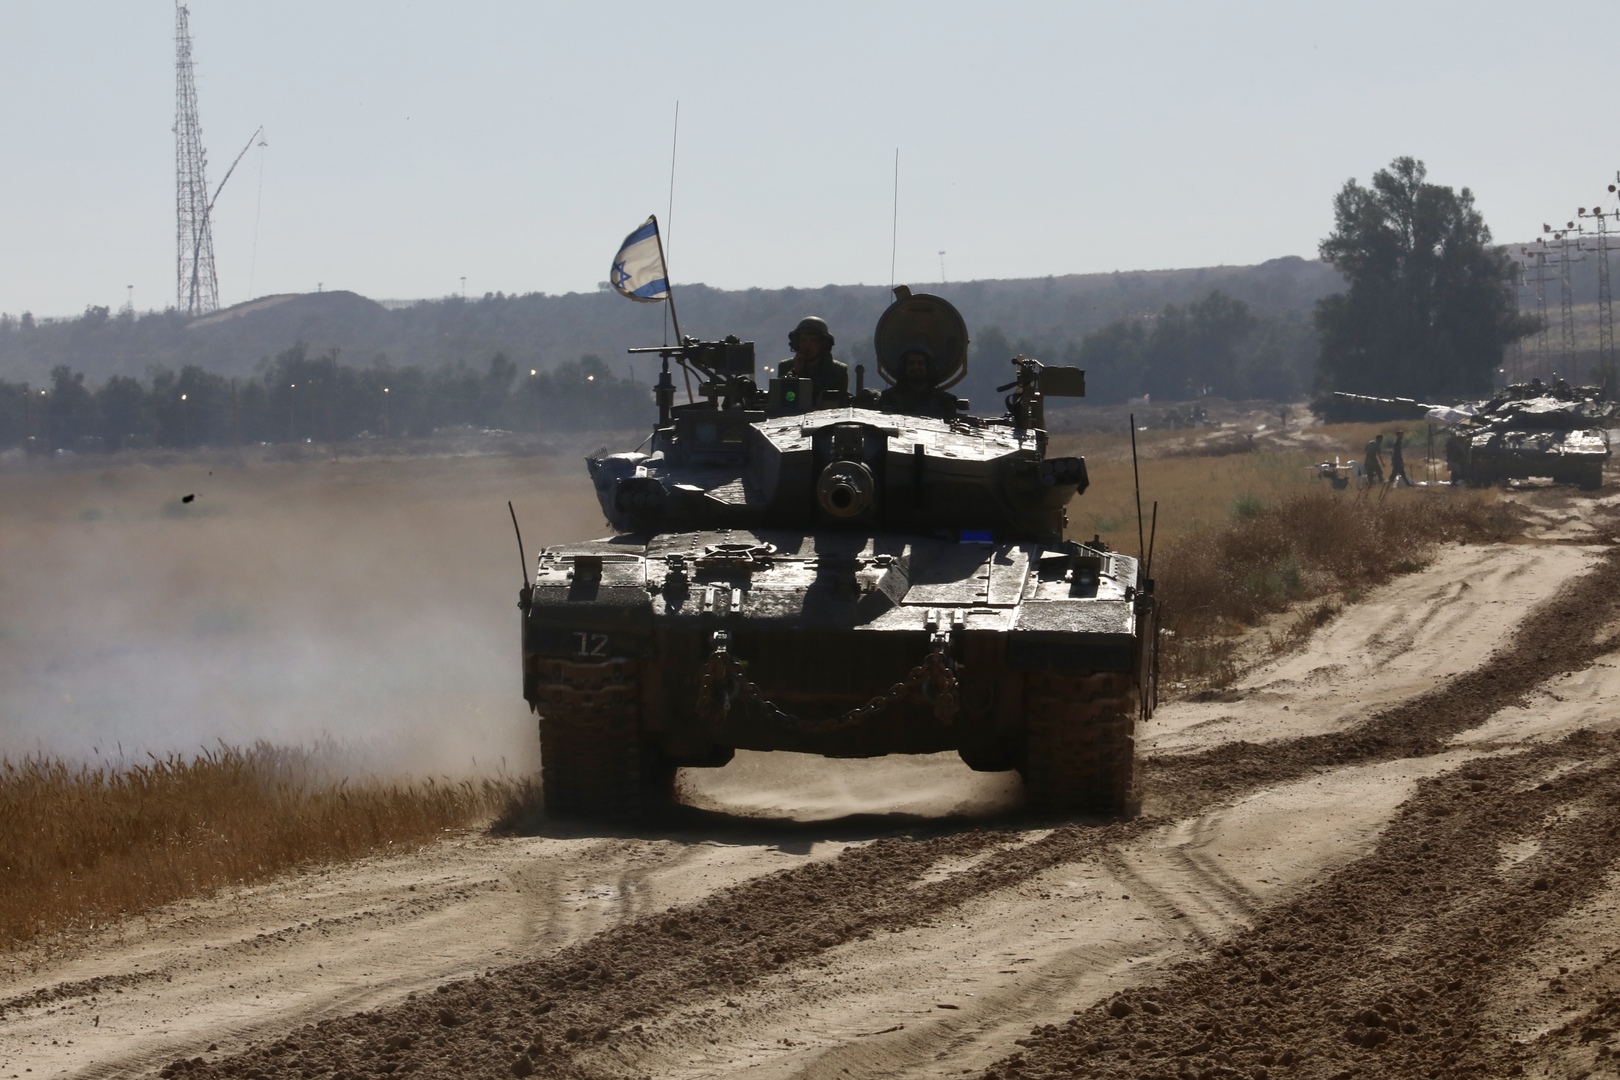 إعلام: الدبابات الإسرائيلية تتوغل في رفح بعد موافقة مجلس وزراء الحرب على الهجوم